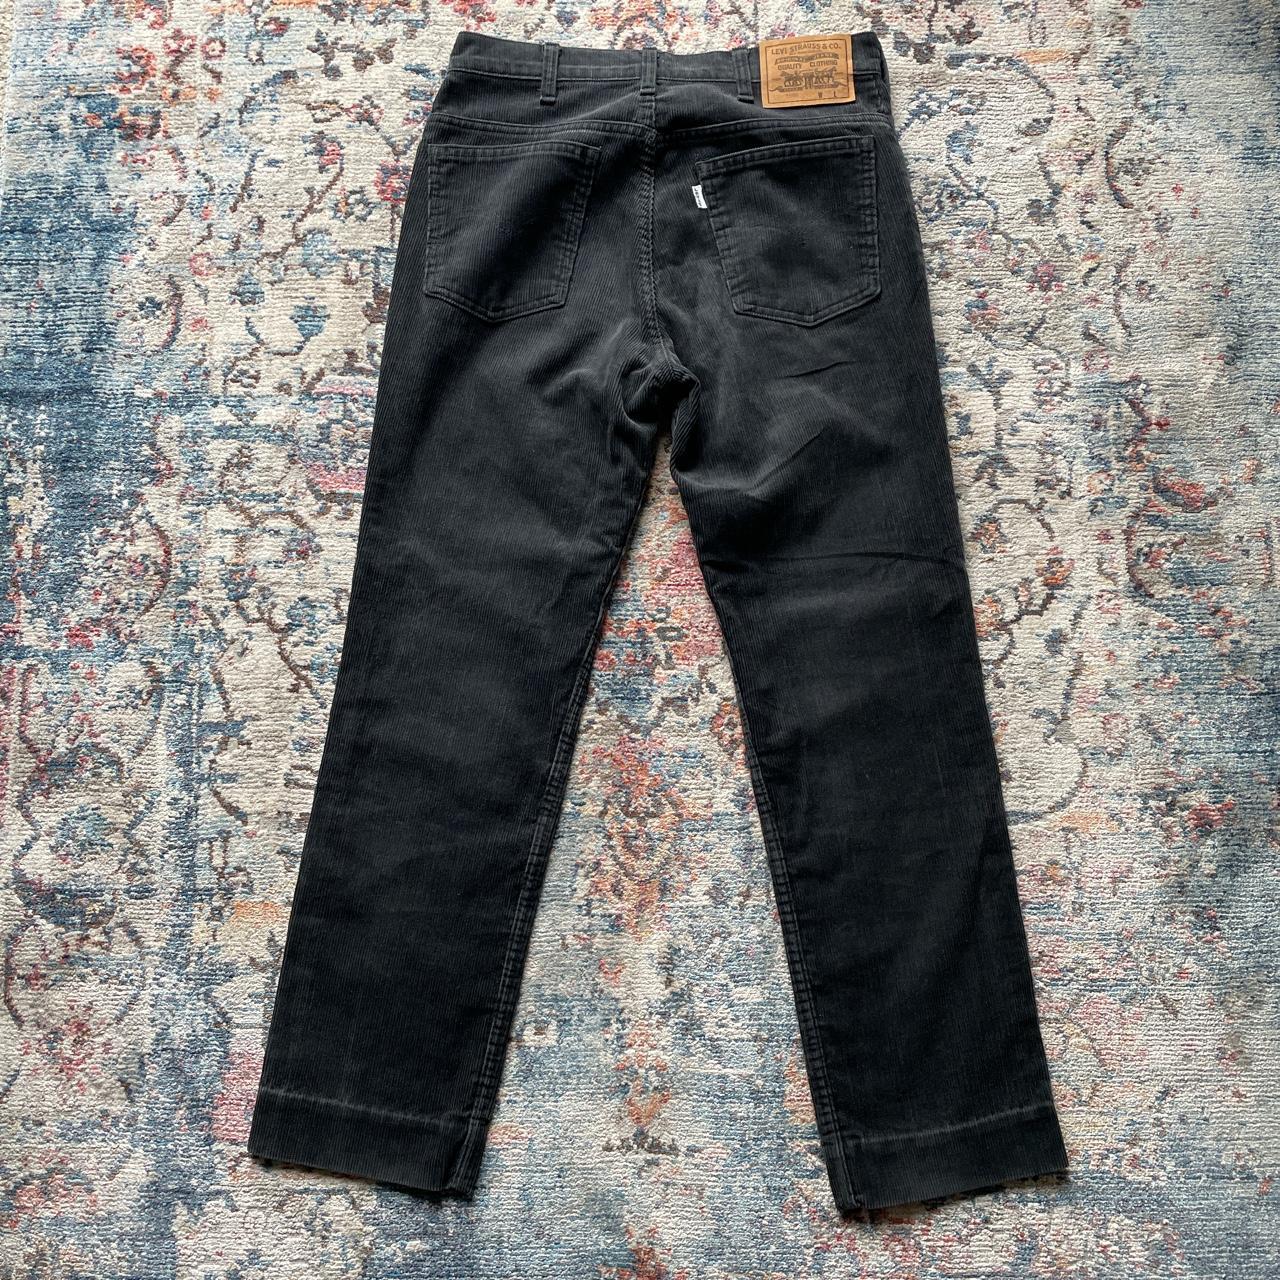 Vintage Levi’s Black Corduroy Trousers